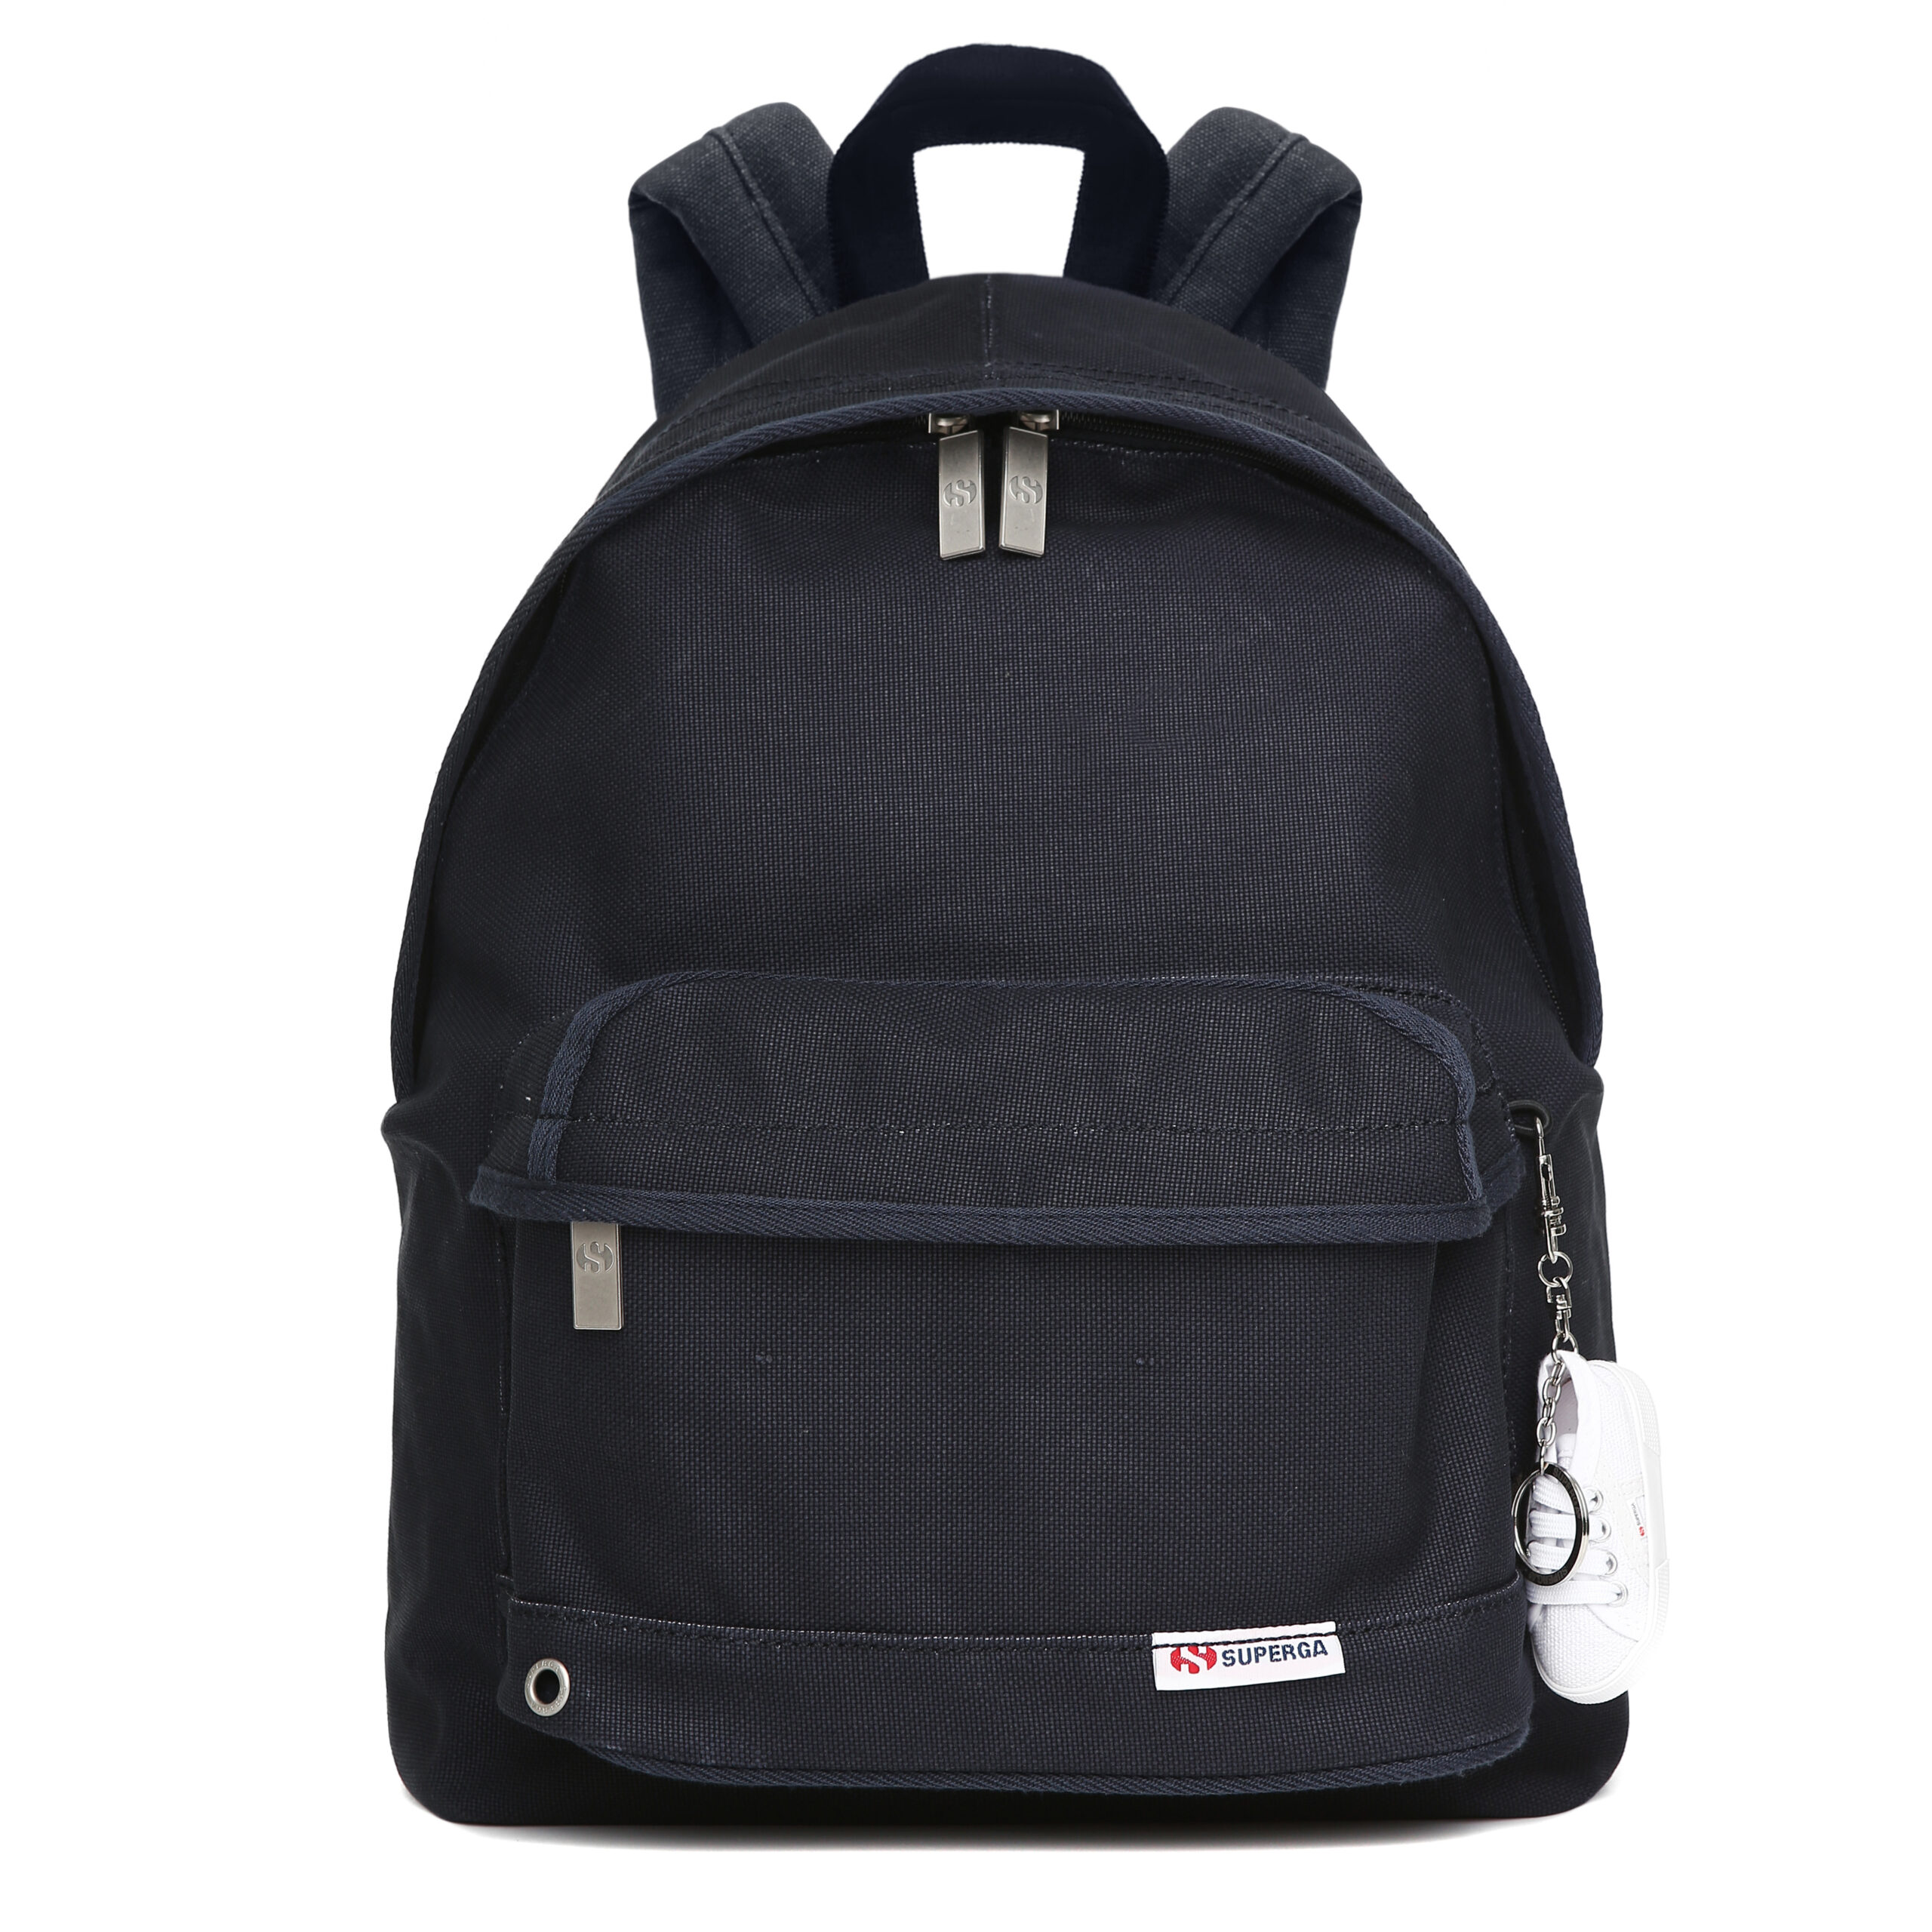 Backpack Small 2750 Nero 100 Cotone Dim 25x36x12 Cm Superga